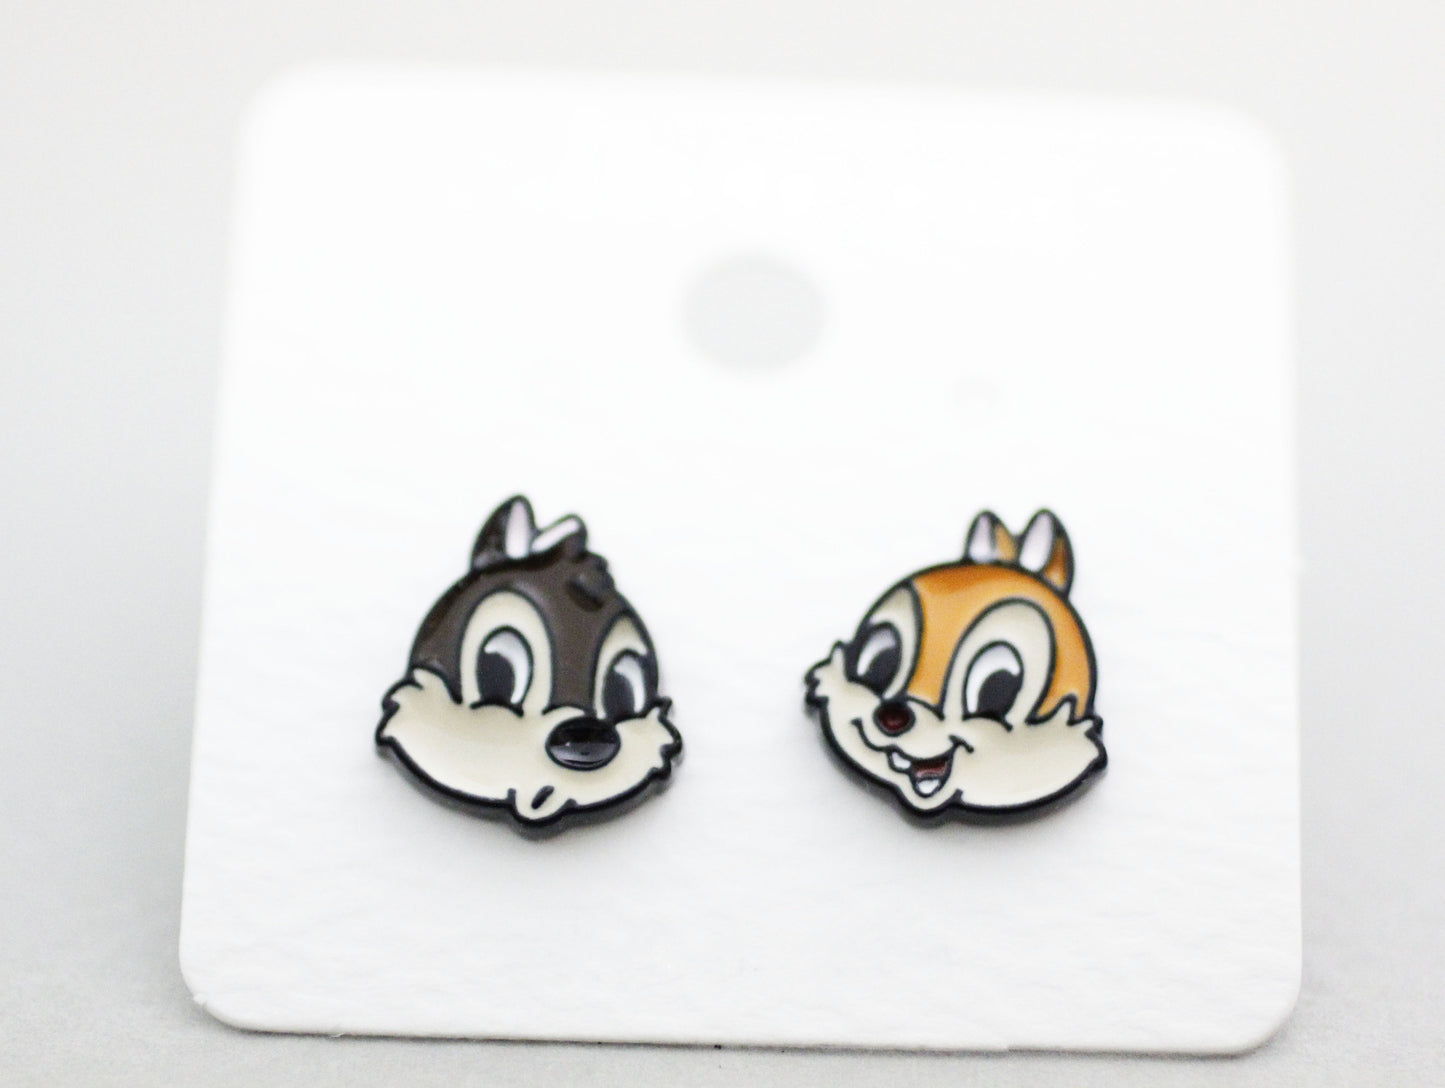 Disney-licensed  Cute Chip 'N' Dale earrings. chip and dale earrings, Squirrel Earrings, Cartoon Earrings